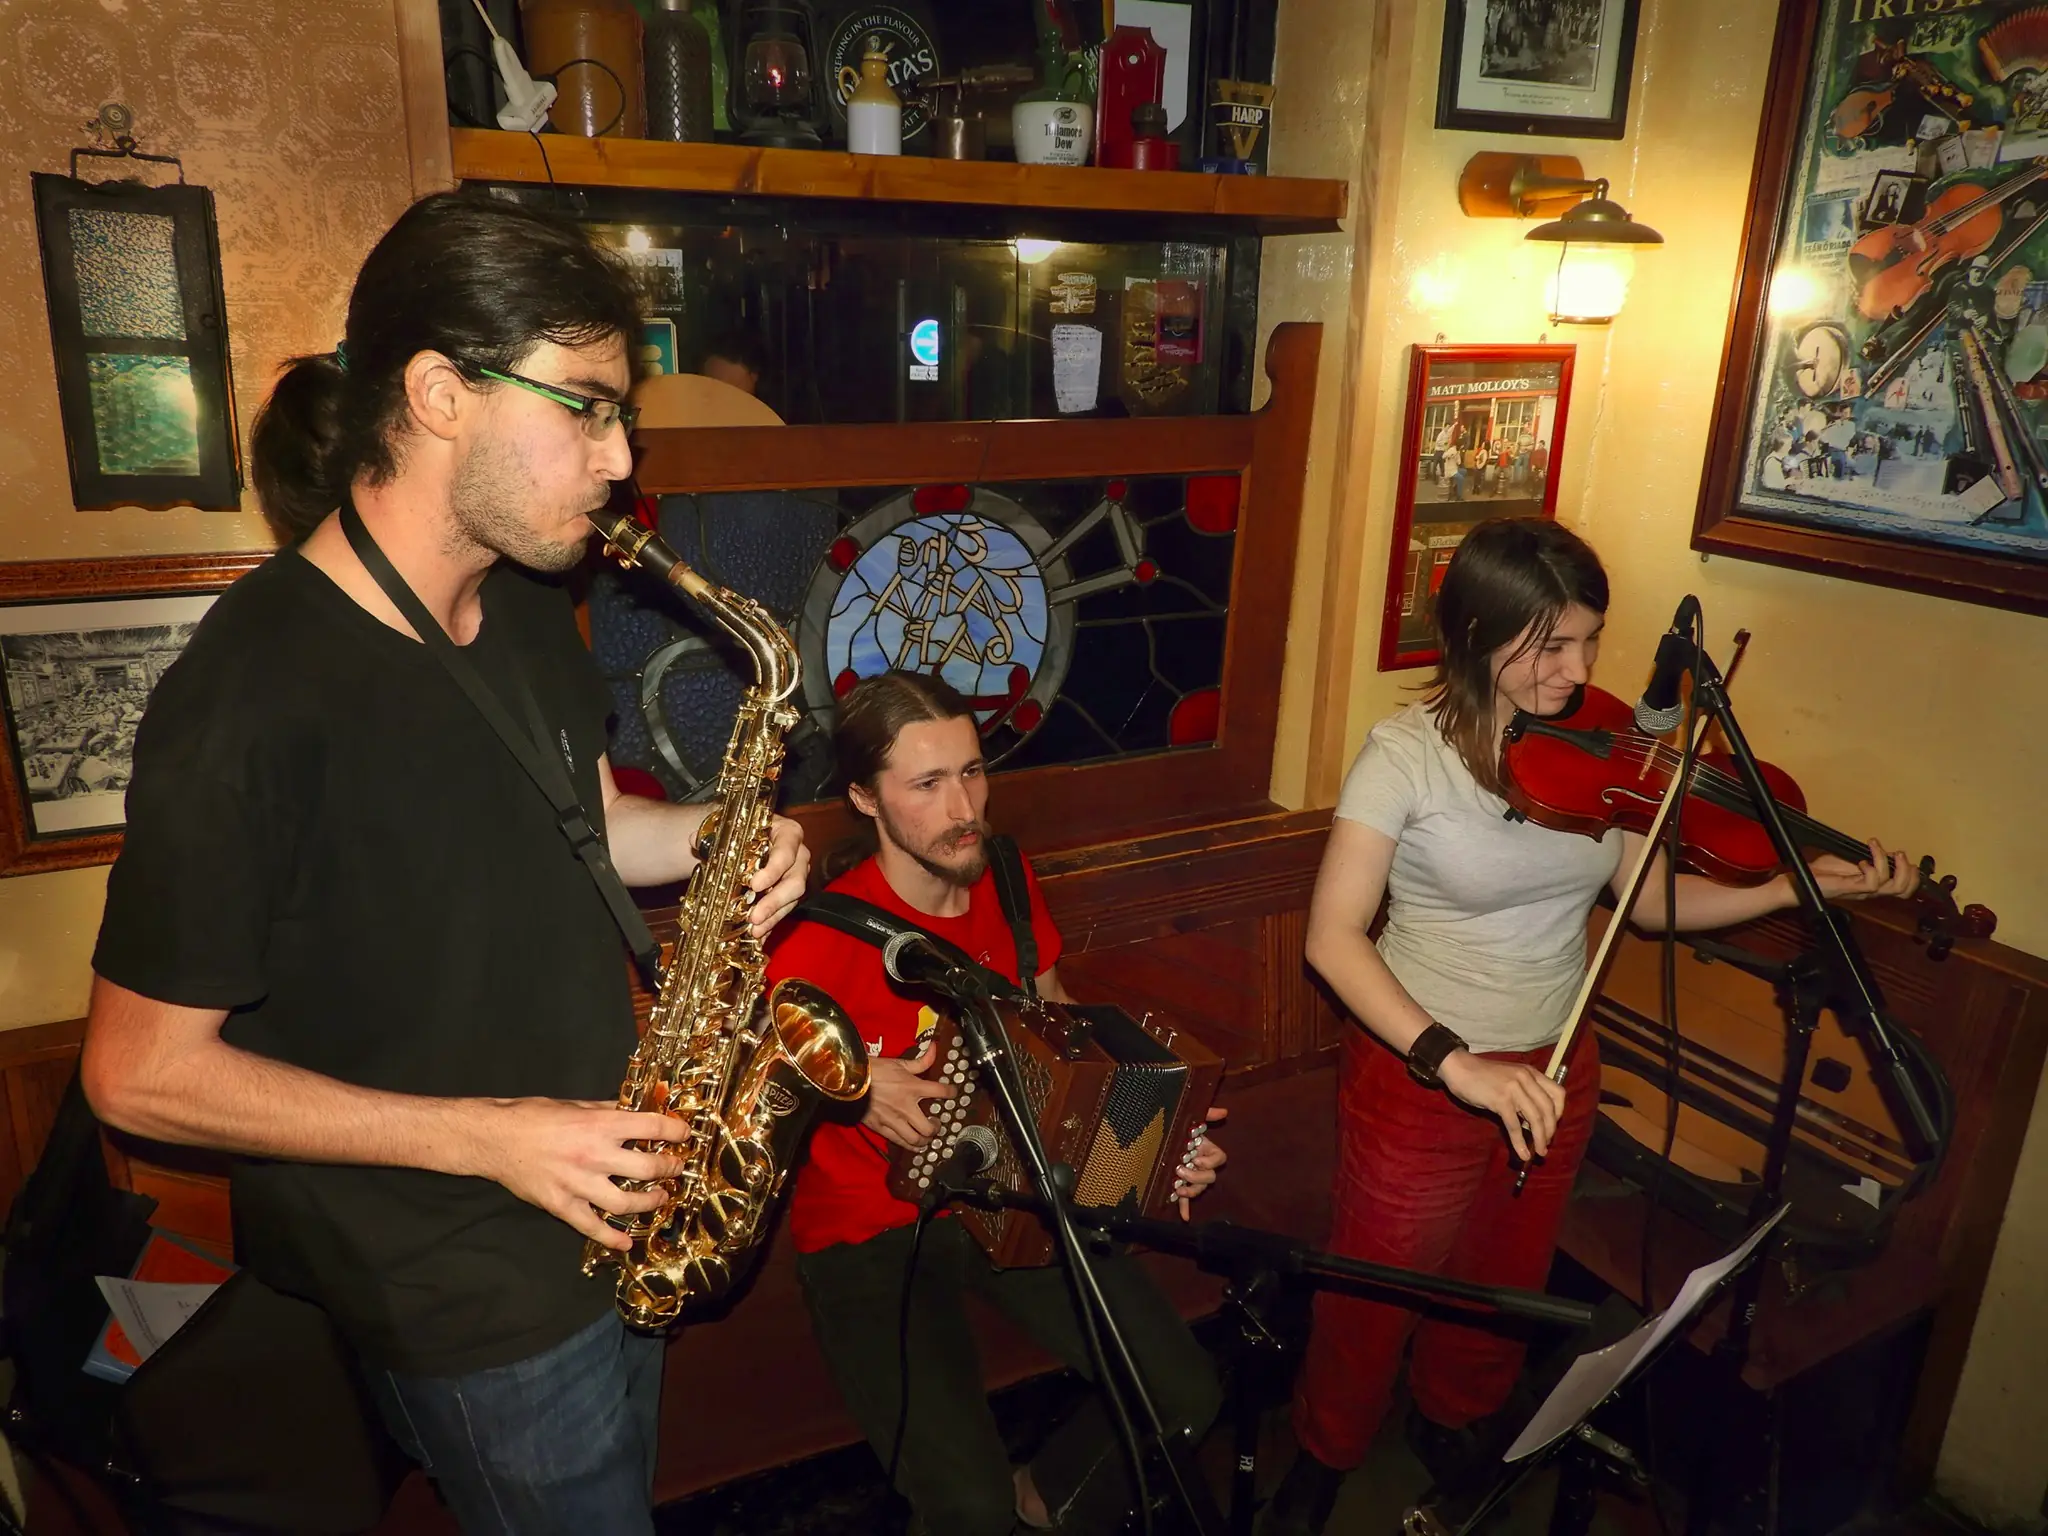 Damien avec son saxophone, Gwendydd avec son violon et Léo avec son accordéon entrain de faire danser le public des lundis du Tara-Inn